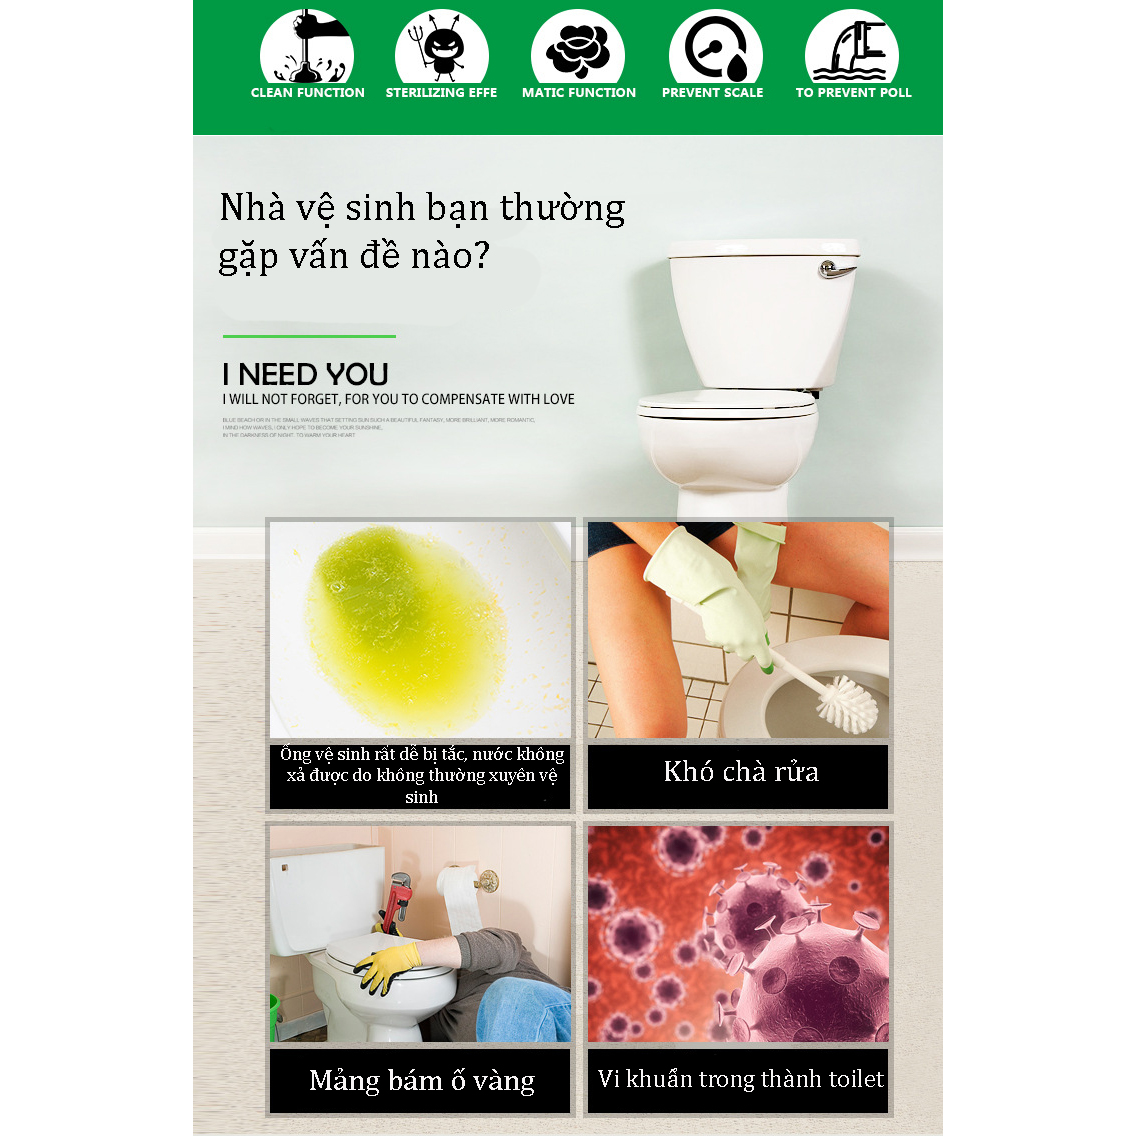 Ếch xanh khử khuẩn toilet 5 in 1, làm sạch nhà vệ sinh, chất tẩy Frog Guard tẩy rửa, khử trùng và khử mùi hôi